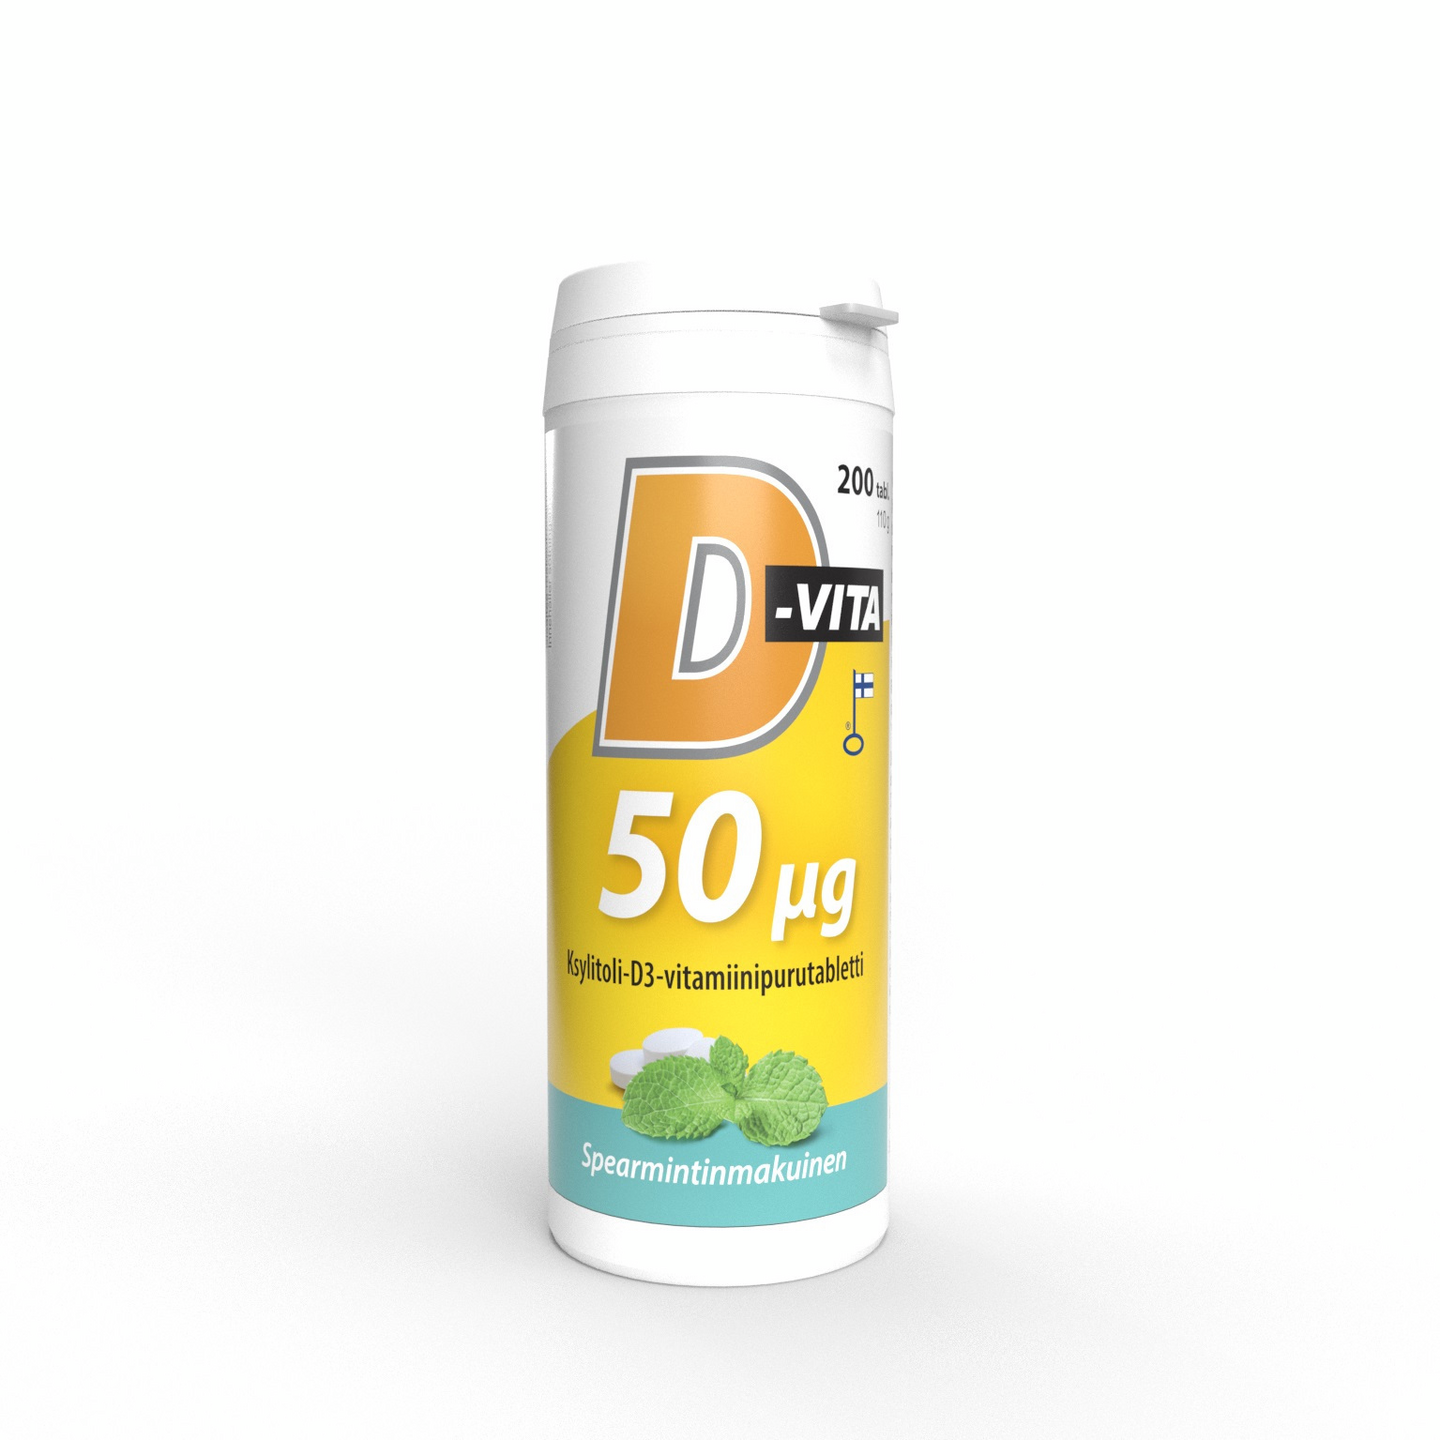 Vitabalans D-Vita 50ug Ksylitoli -D3 vitamiinipurutabletti 200tabl spearmintinmakuinen